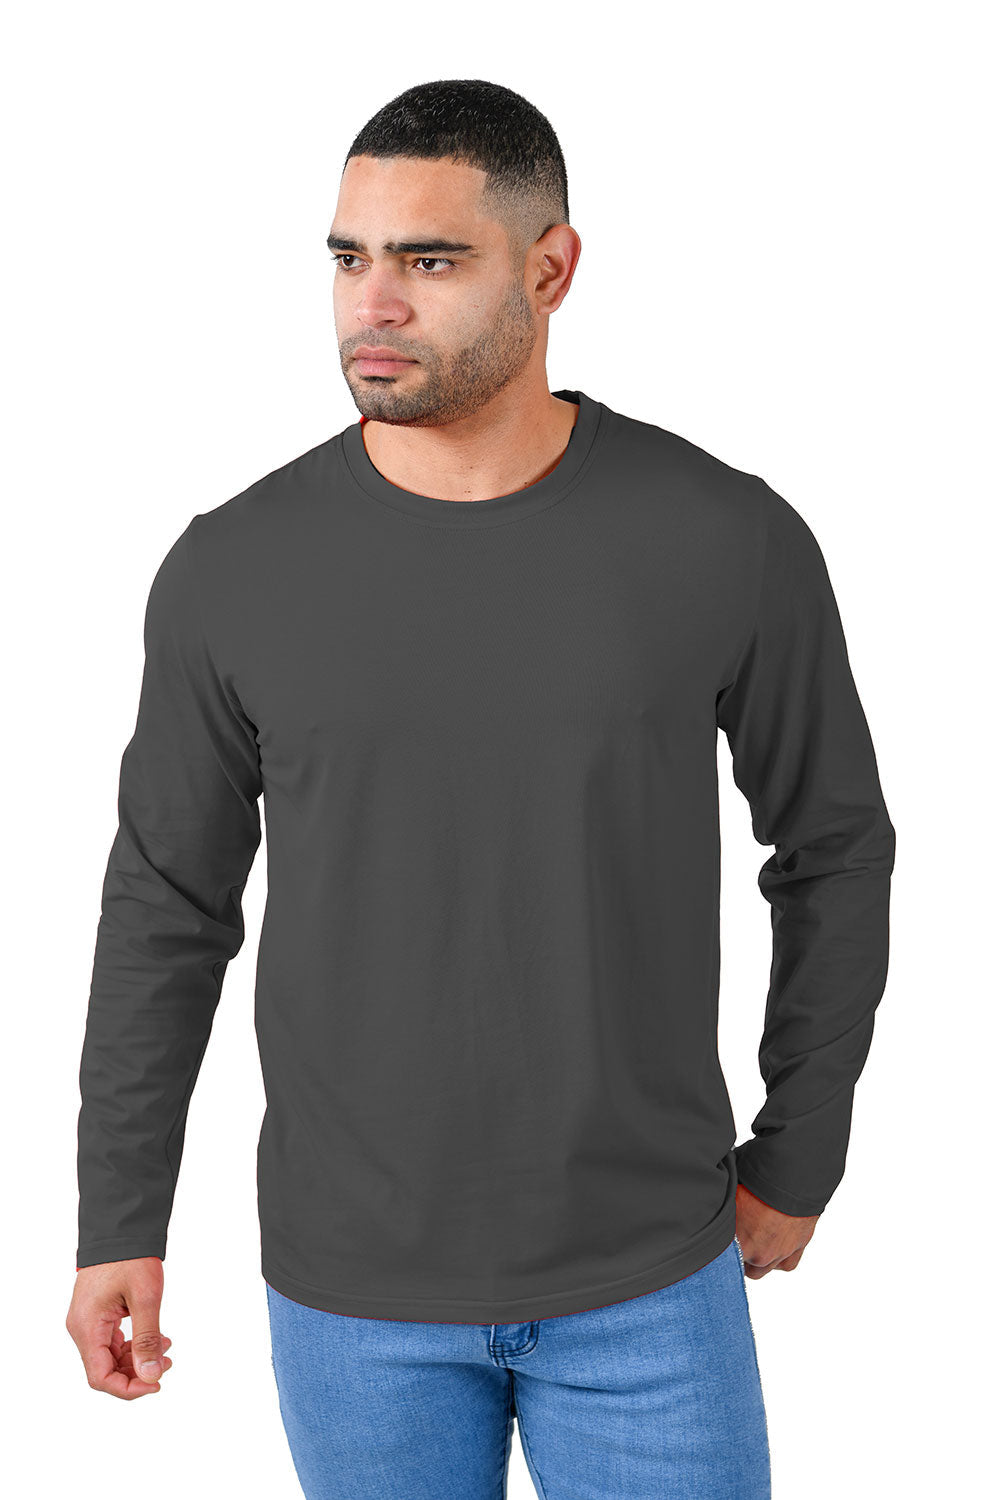 Barabas Men's Solid Color Crew Neck Sweatshirts LV127 charcoal